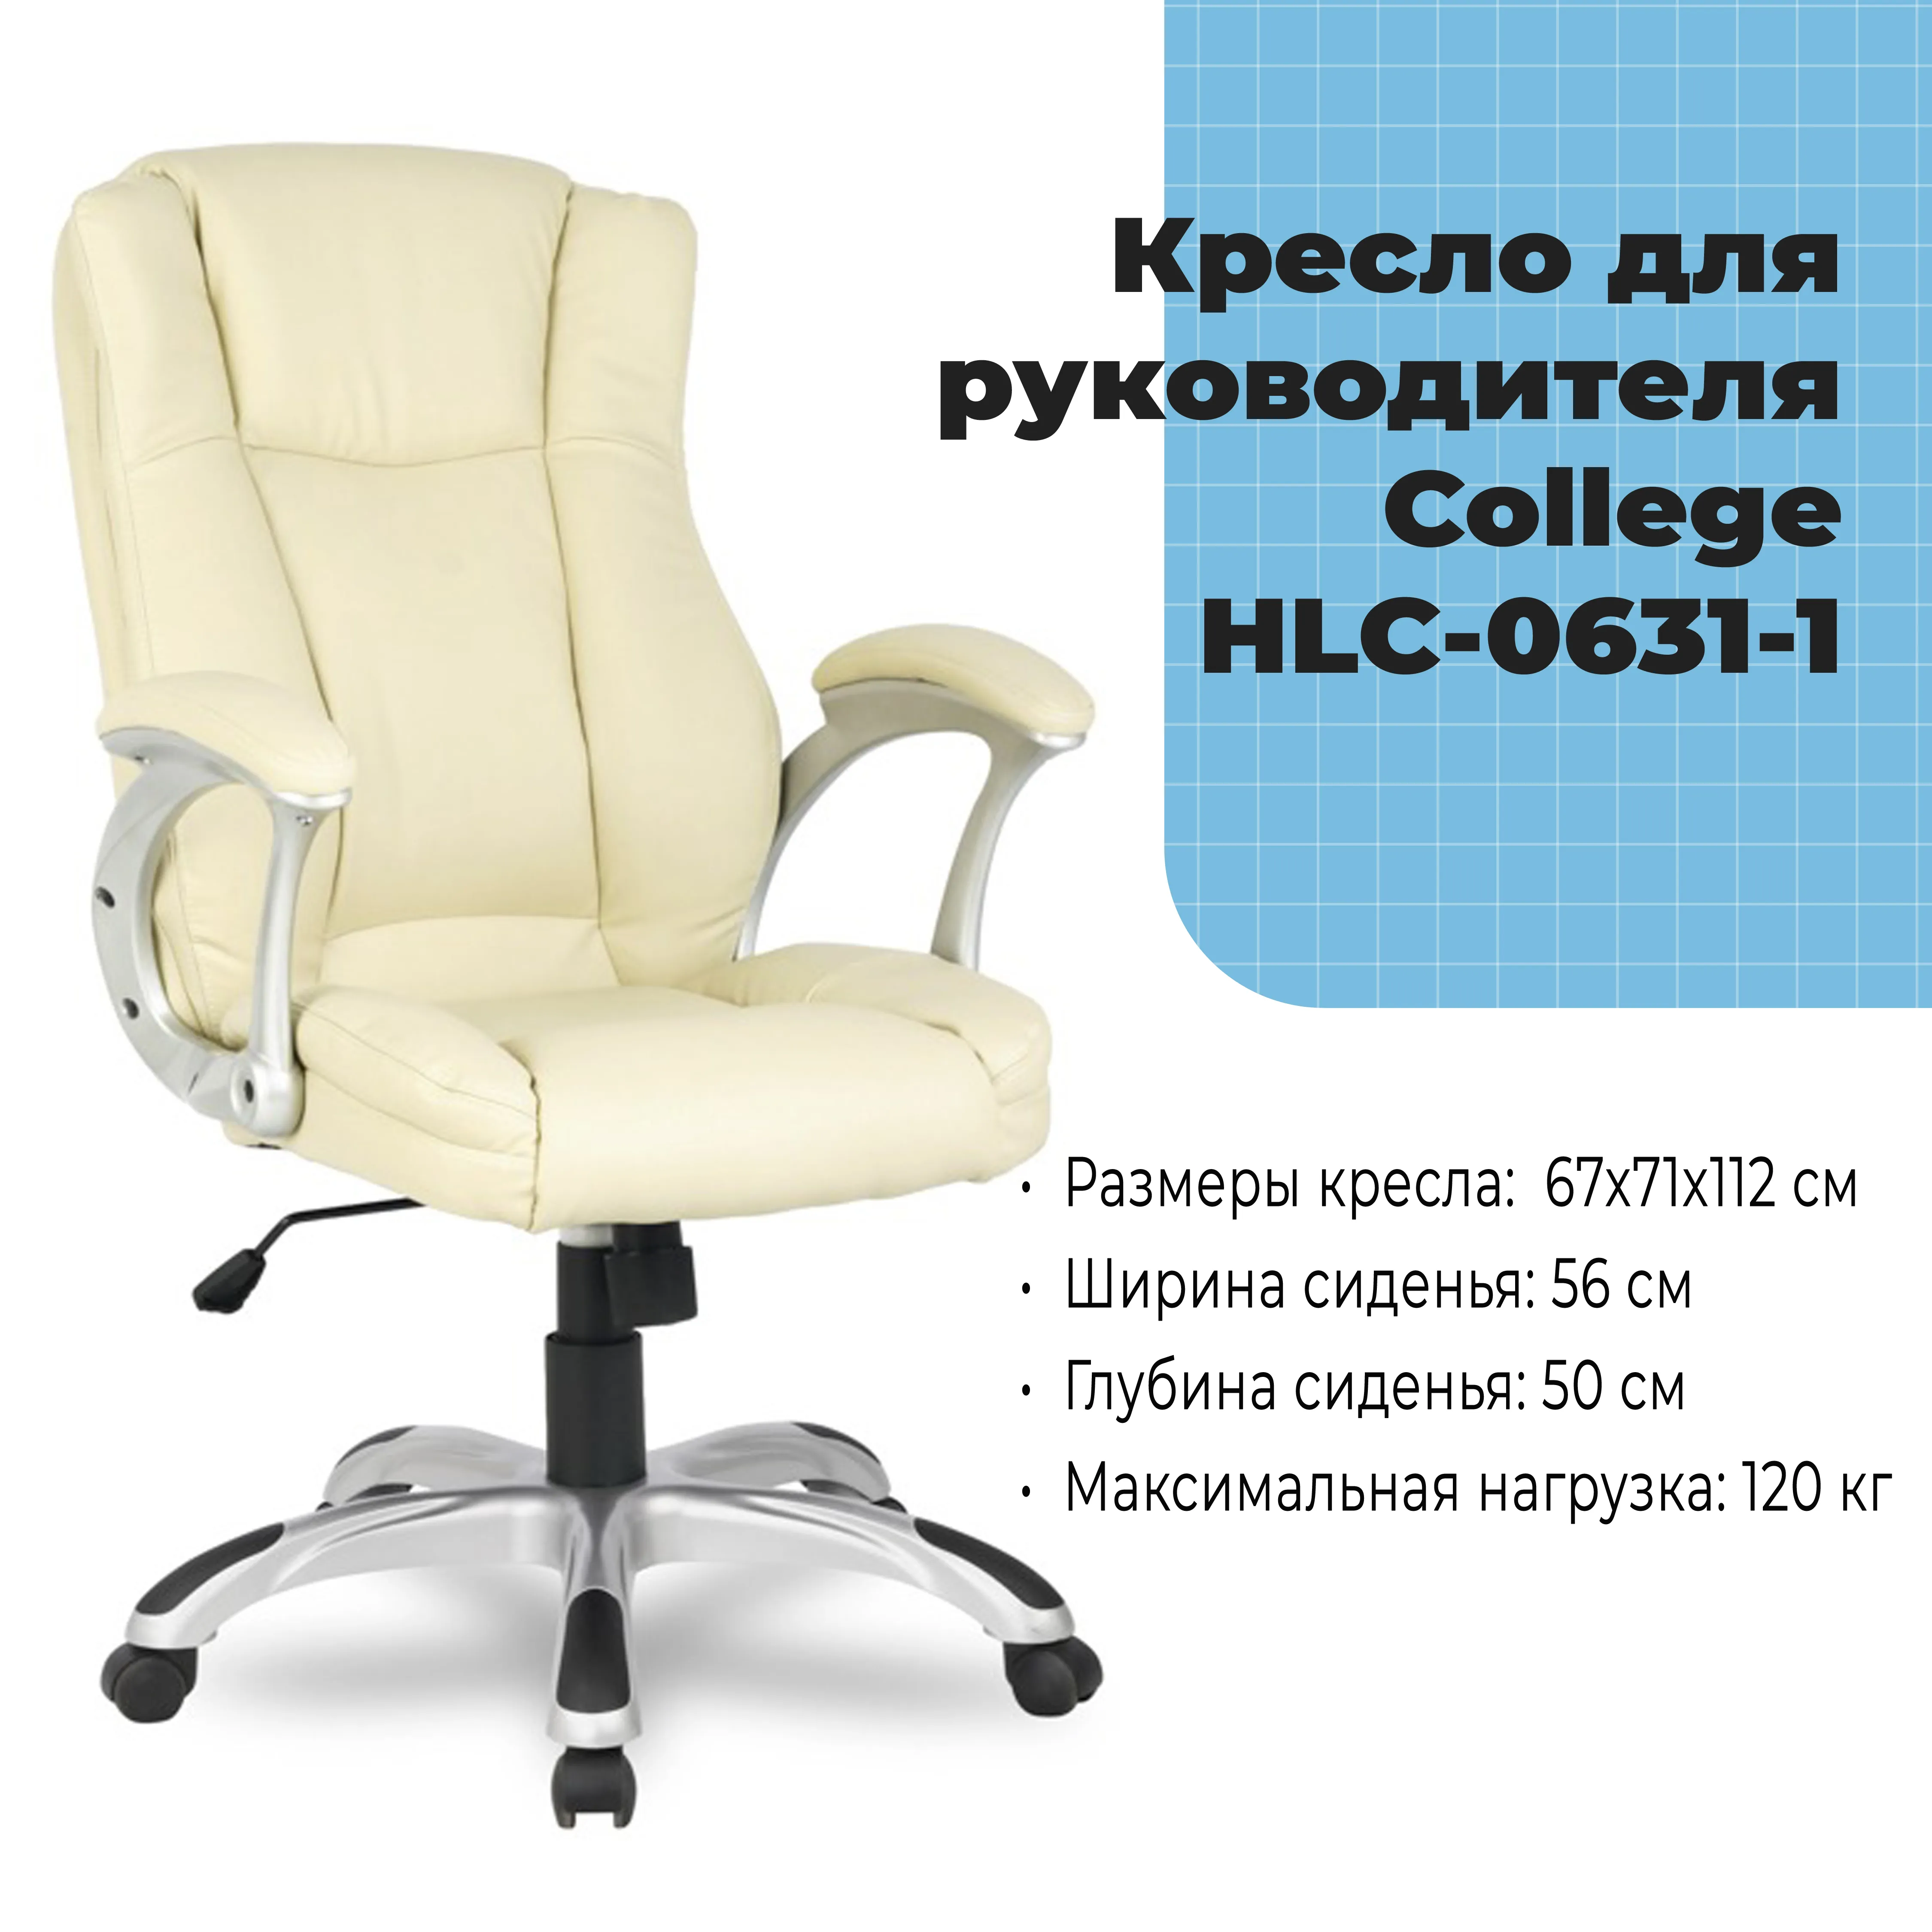 Кресло для руководителя College HLC-0631-1 Бежевый